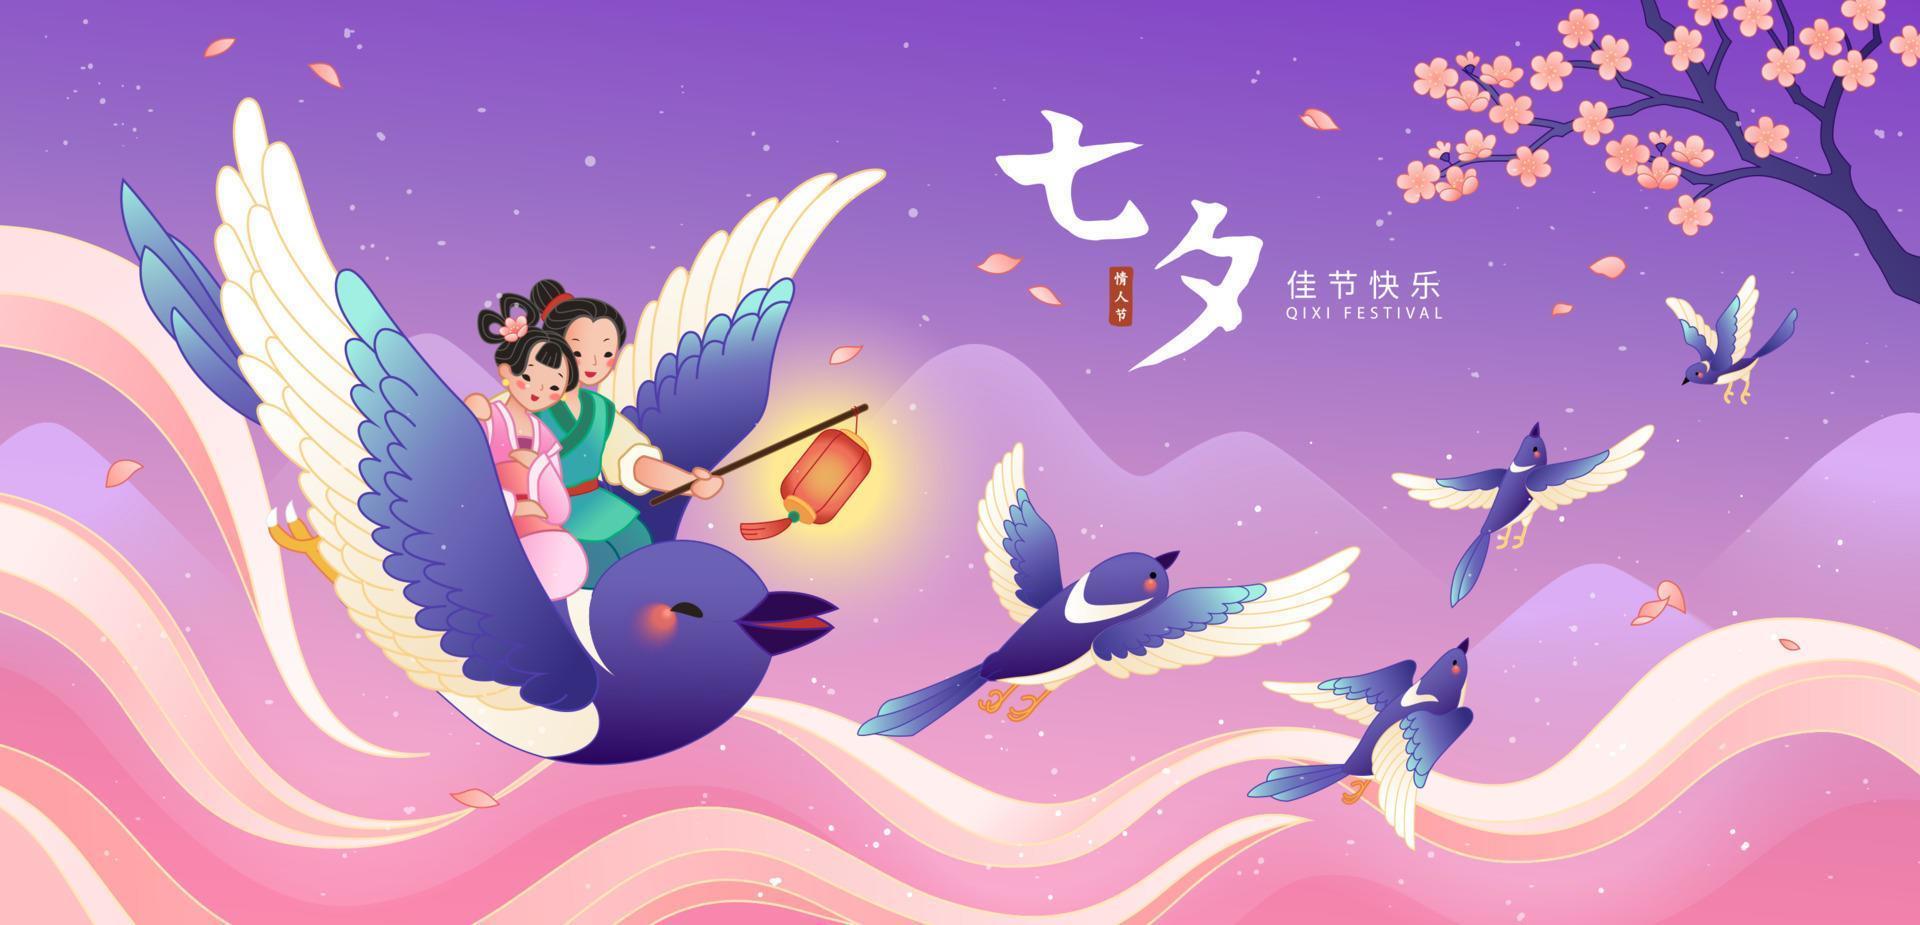 qixi festival banier in vlak stijl. illustratie van paar in traditioneel Chinese kostuums gelukkig nemen een vlucht door blauw ekster. Chinese vertaling, qixi festival, Chinese valentijnsdag dag vector